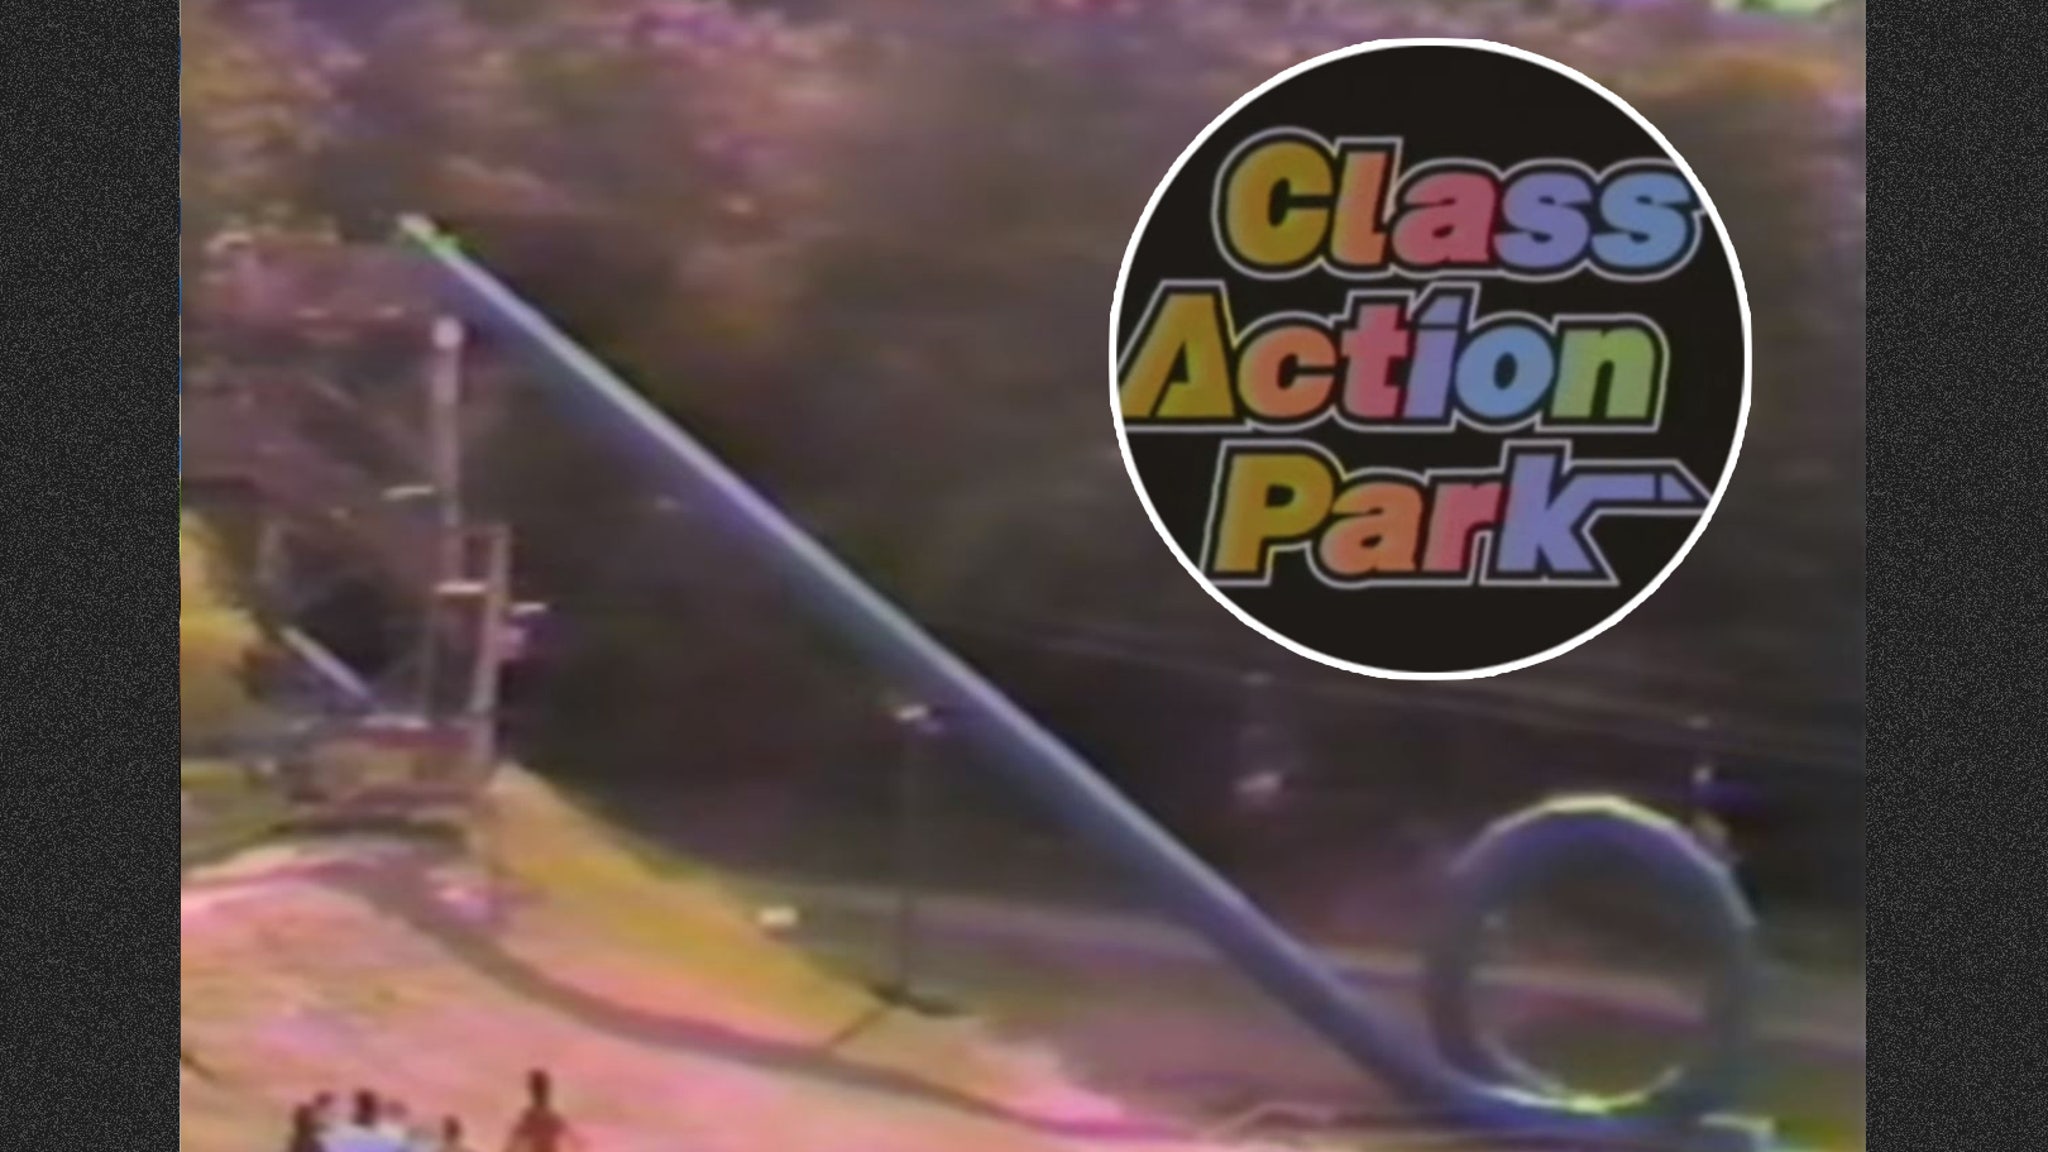 'Class Action Park' Trailer Exposes World's Deadliest Amusement Park